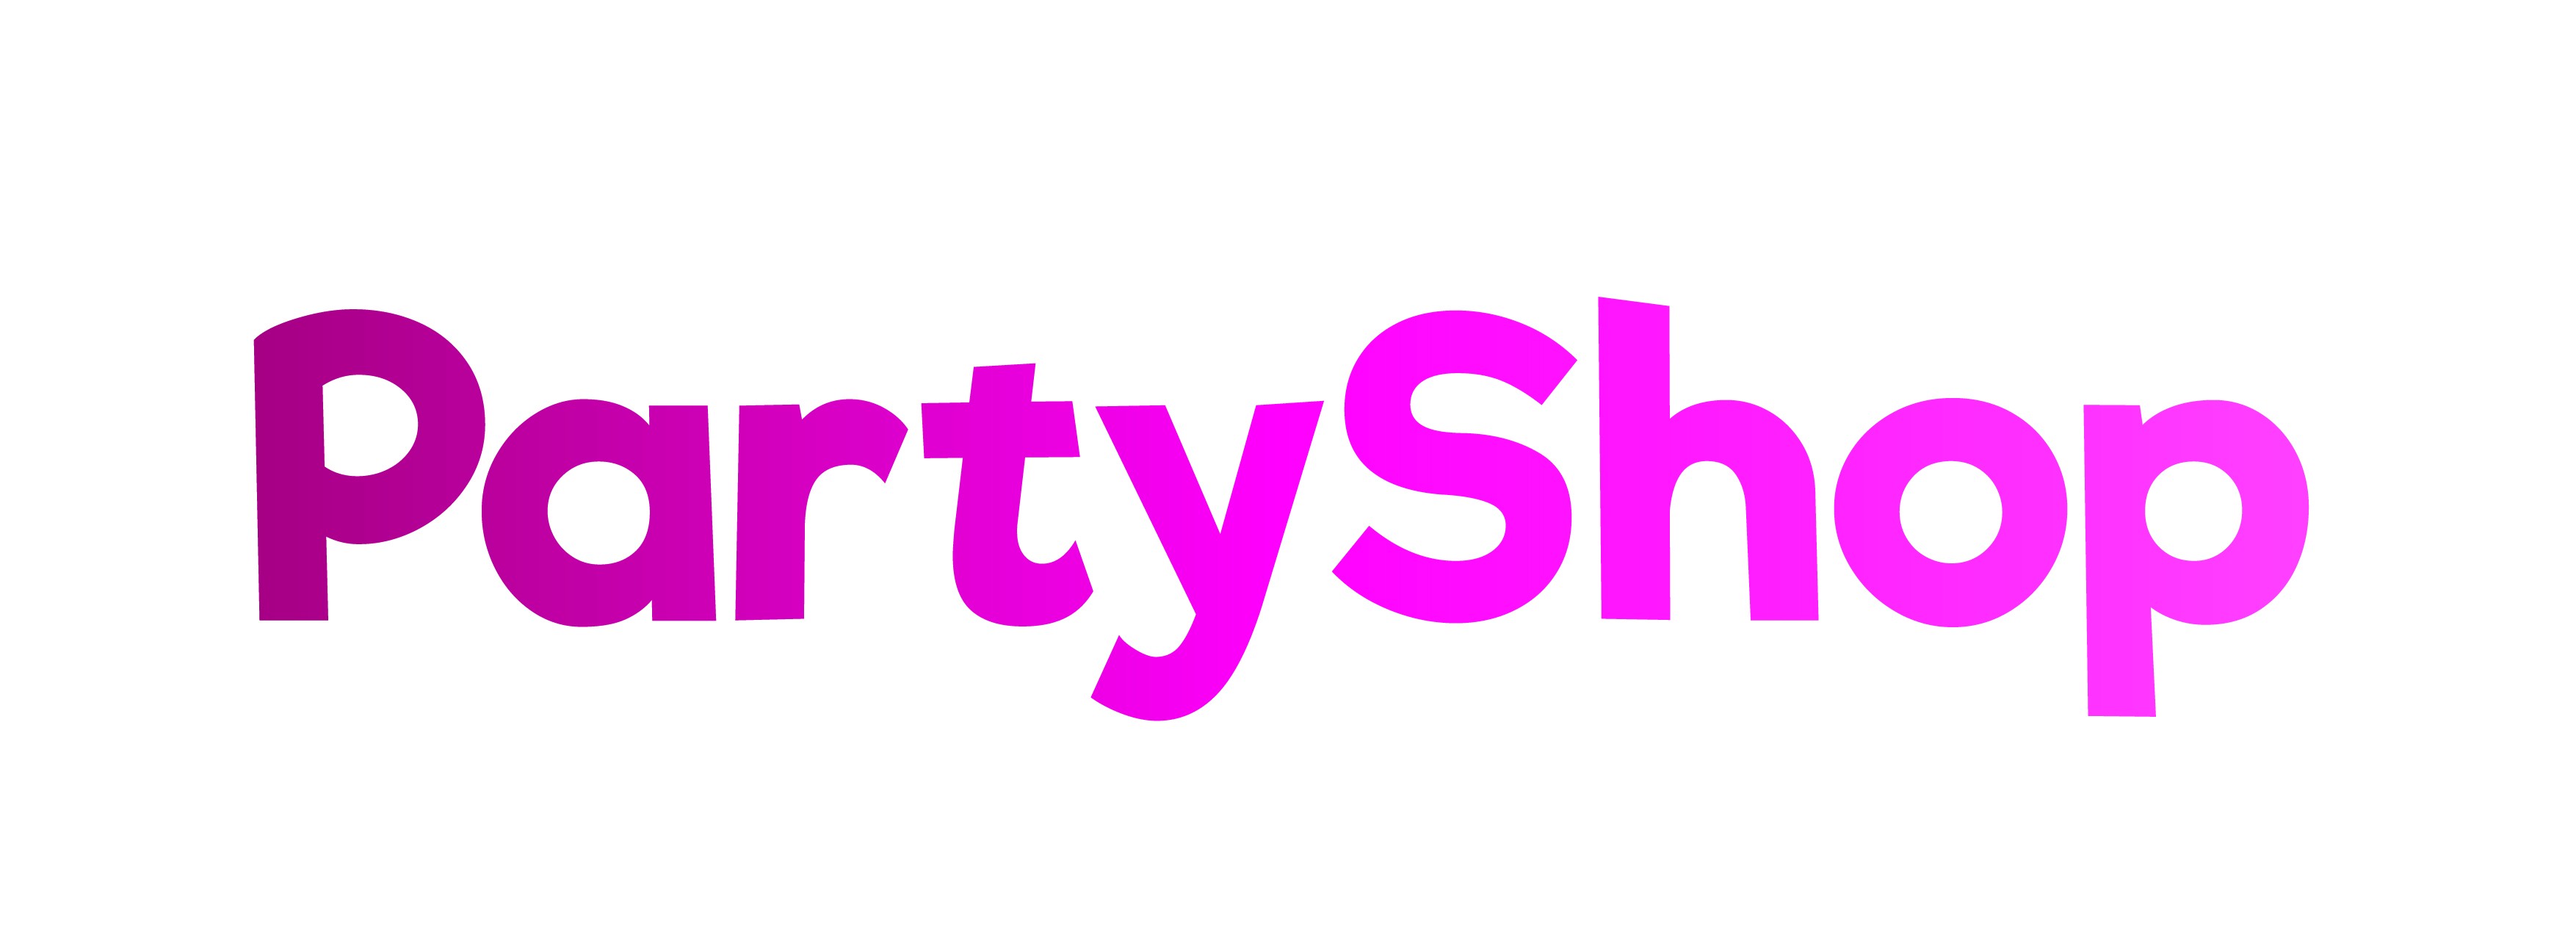 PartyShop - Boutique de fête et de ballons